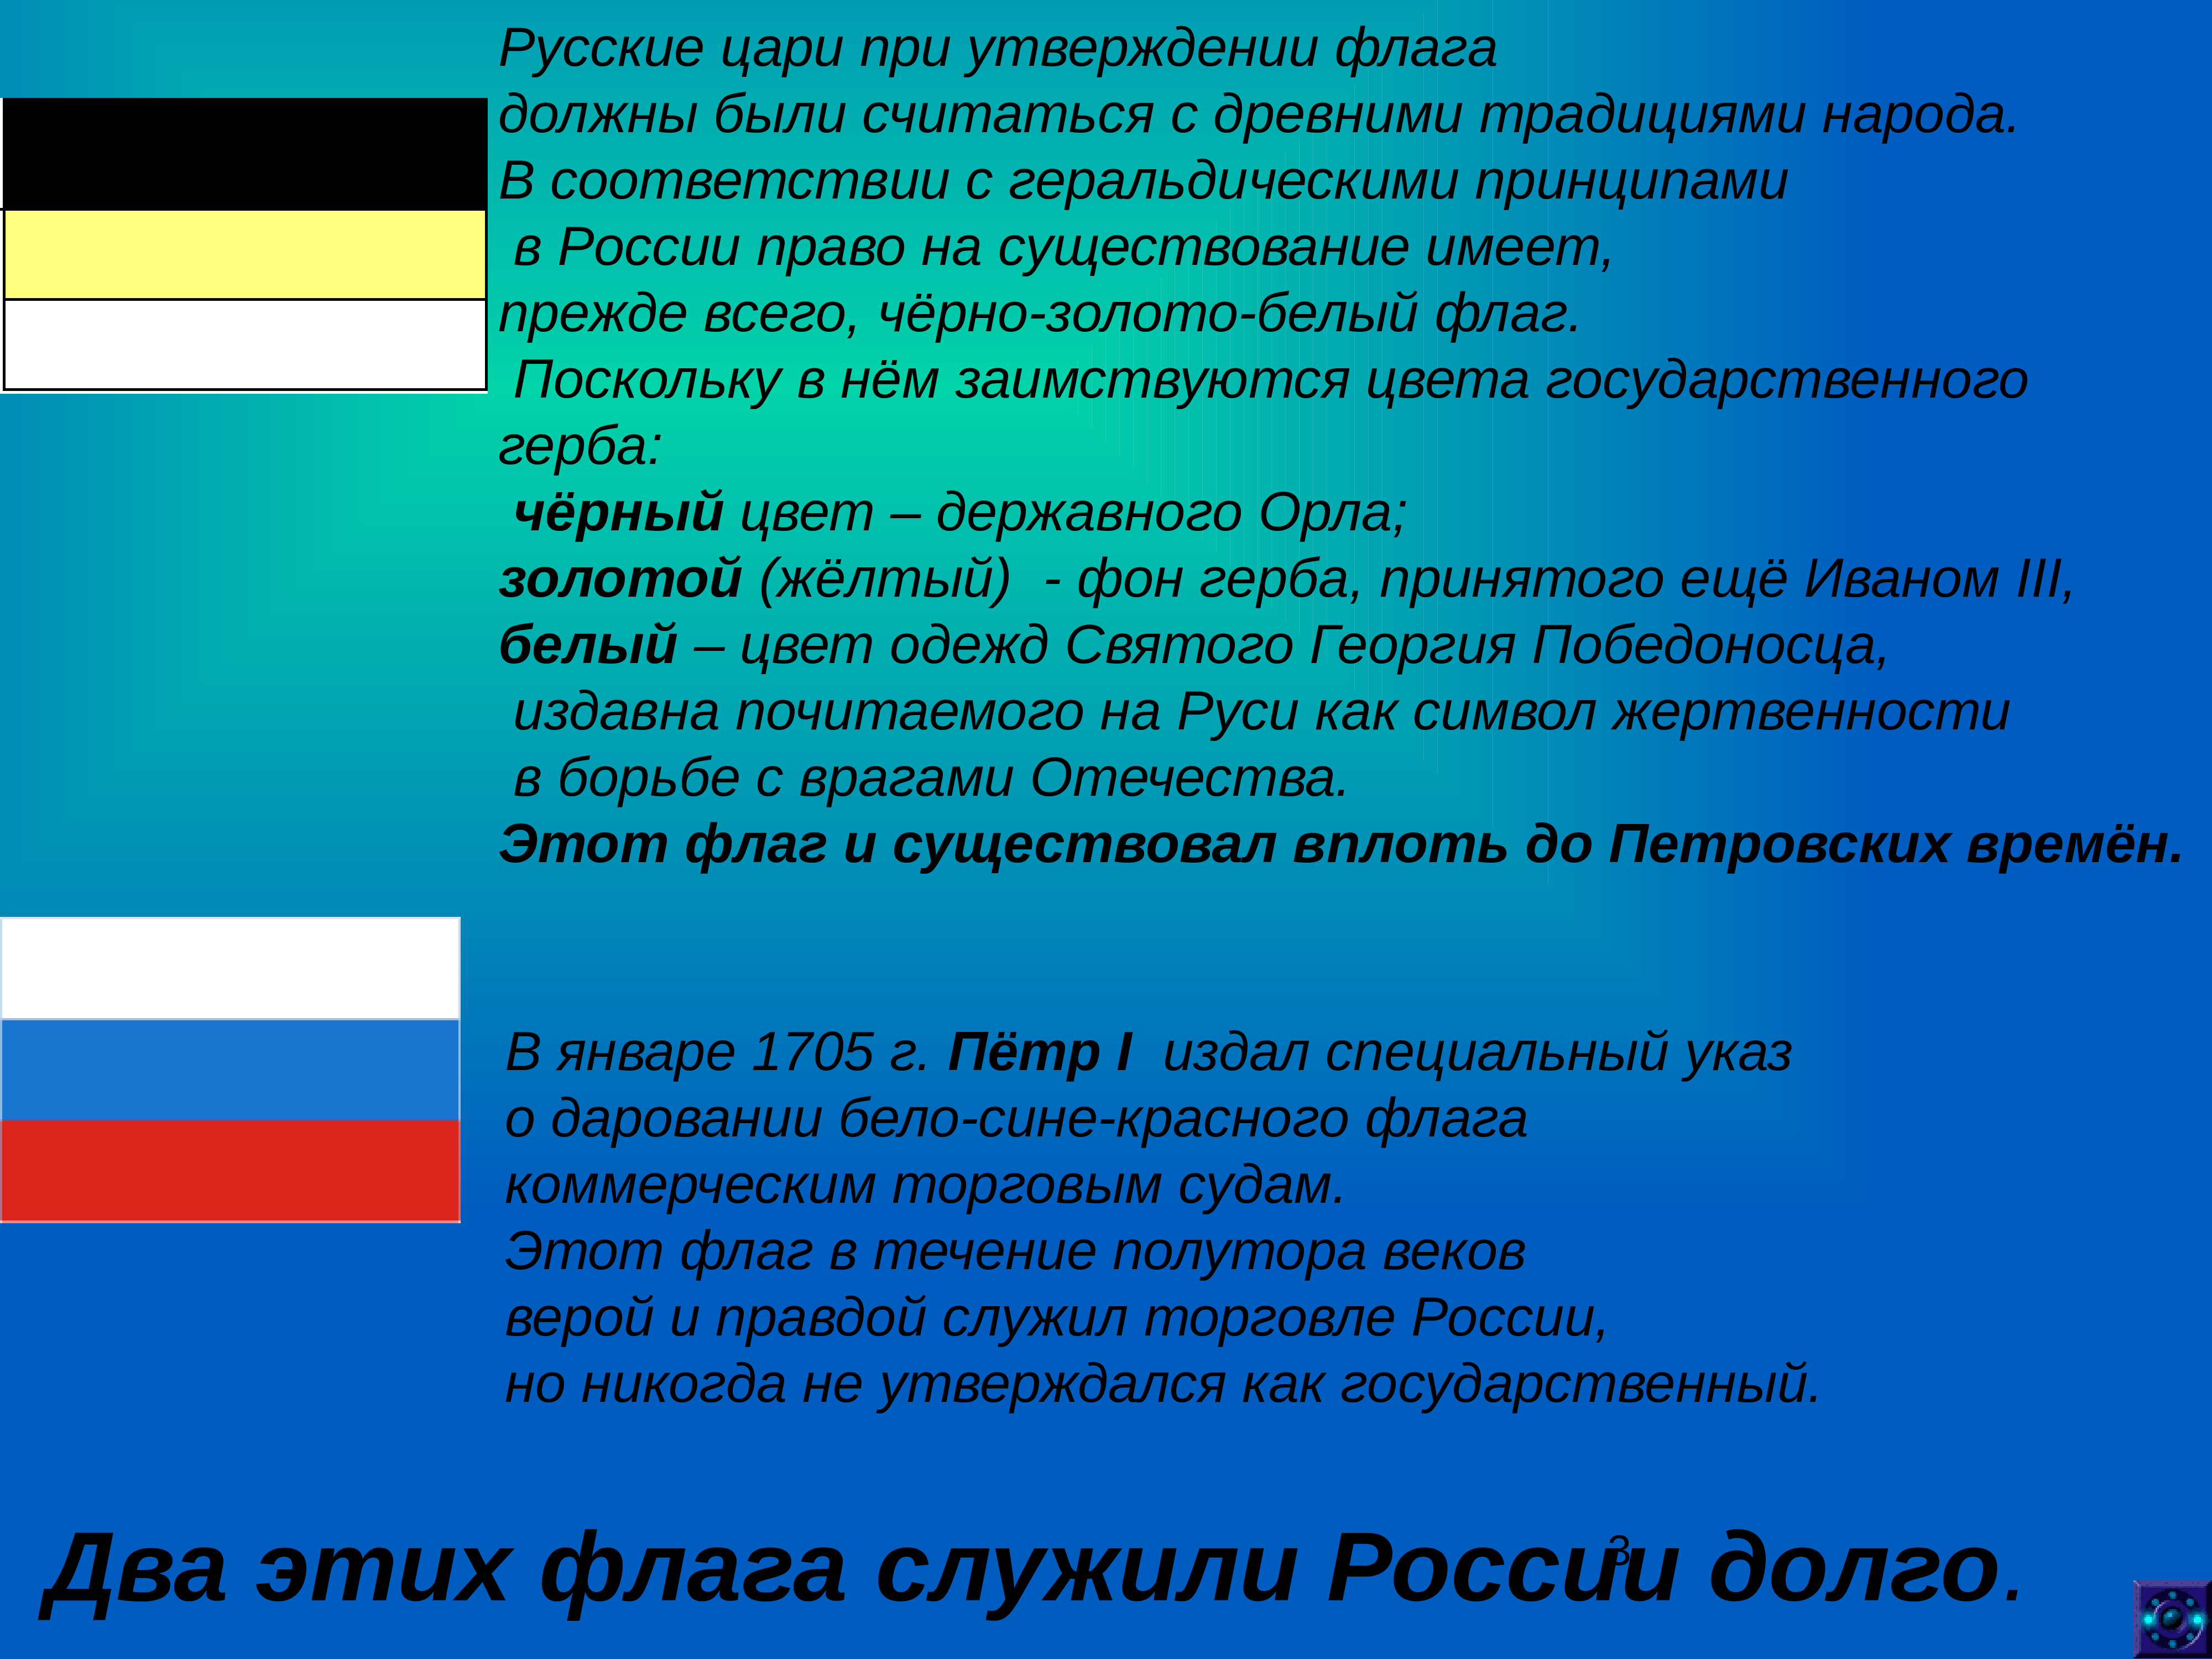 Почему нельзя флаг. Цвета флага царской России. Флаг голубой белый красный. Красно синий флаг. Триколор флаг.